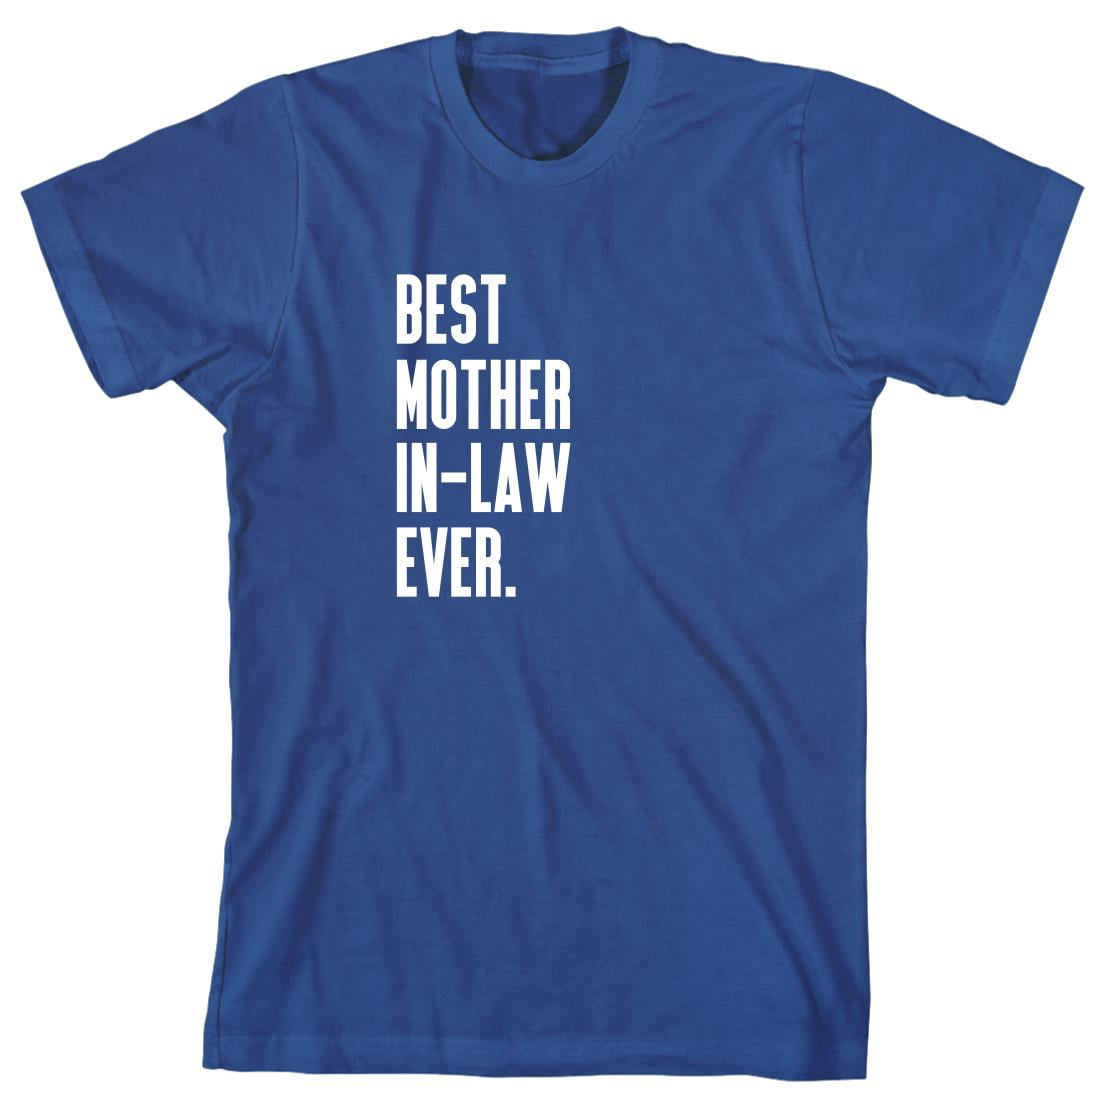 Best Mother-In-Law Ever Men's Shirt - ID: 655 - Walmart.com